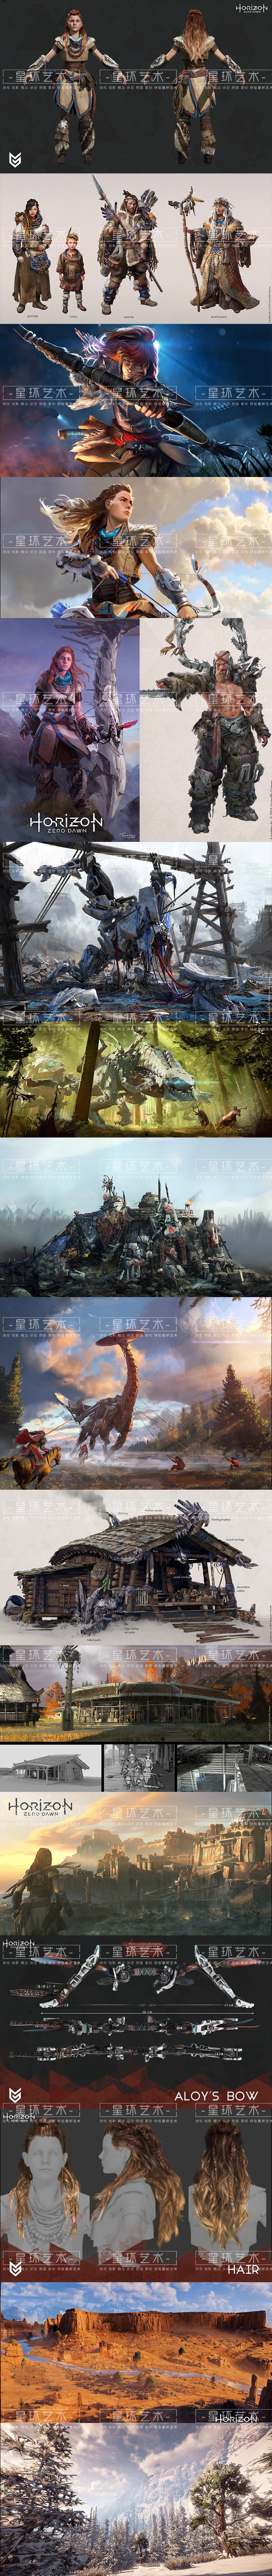 地平线：黎明时分 概念设定 游戏原画 角色 场景 高清资料图集素材美术下载